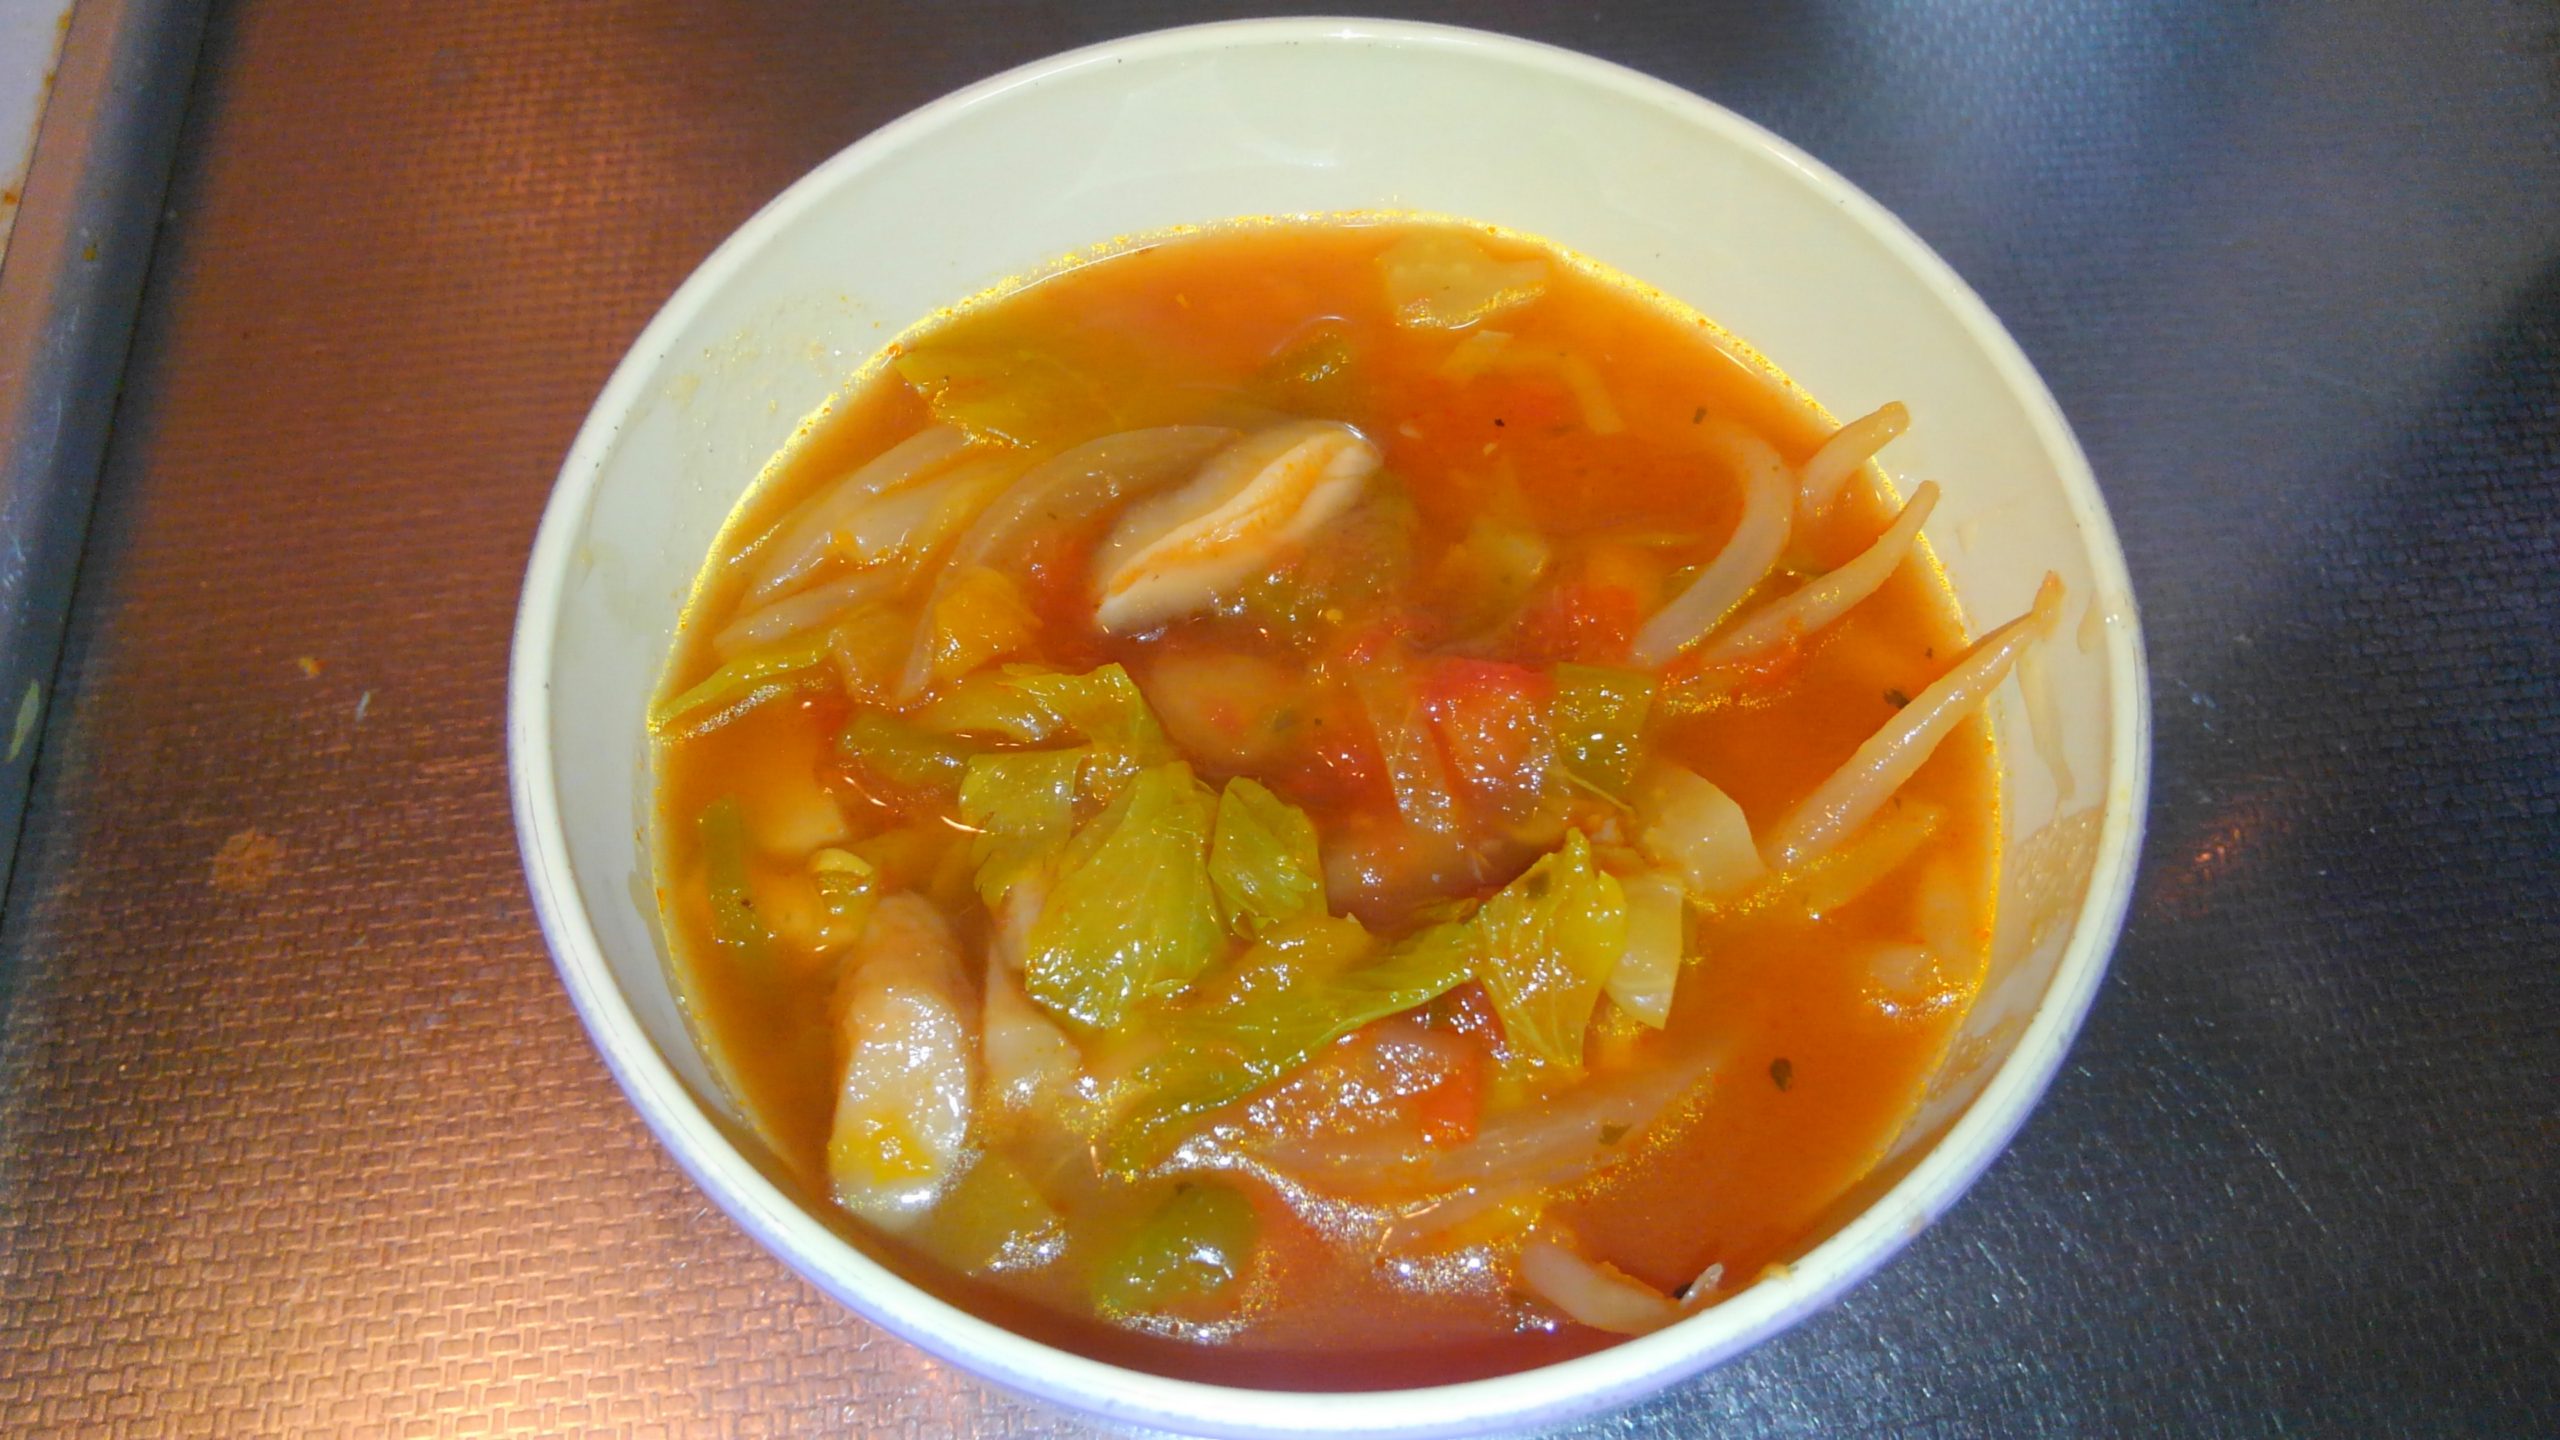 トマト なし 燃焼 スープ 脂肪 飽きない！ダイエットスープの簡単レシピ&味付けの方法【トマトなし・白菜代用など】